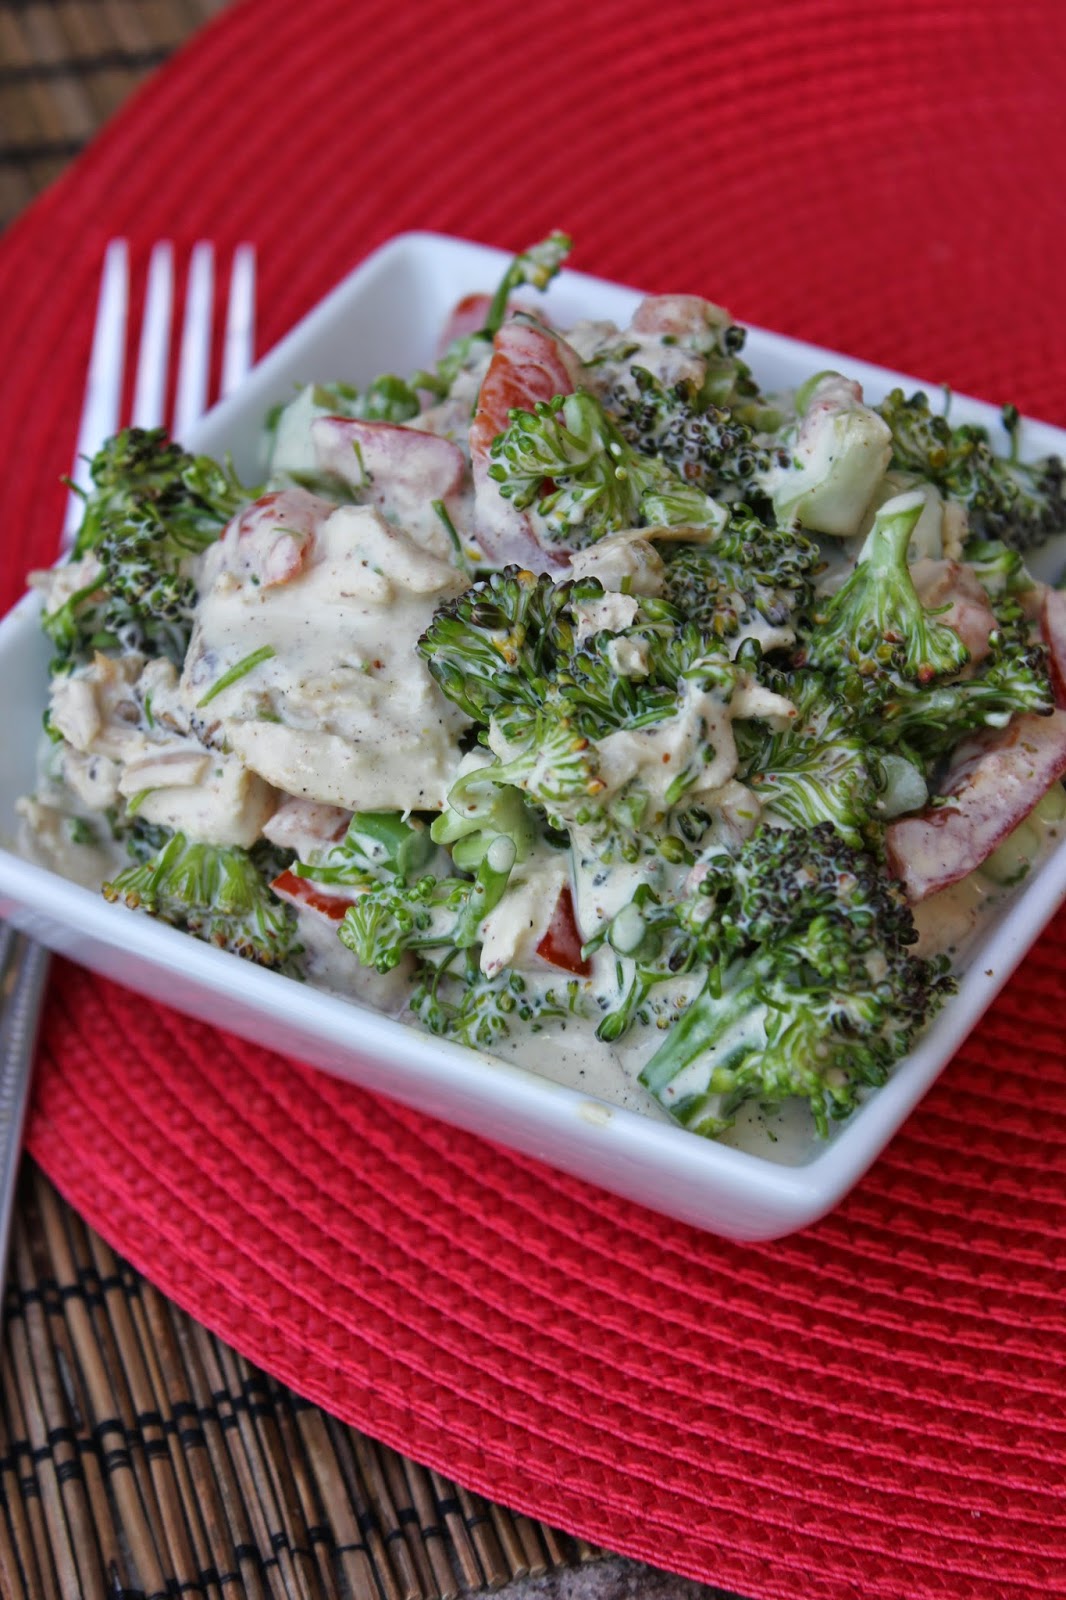 Ina Garten's Mustard Chicken Salad, Recipe: Chicken, Recipe: Vegetable, Recipe: Salad, Recipe: Side Dishes, Garden Recipes, broccoli, dijon mustard, Barbecue, 